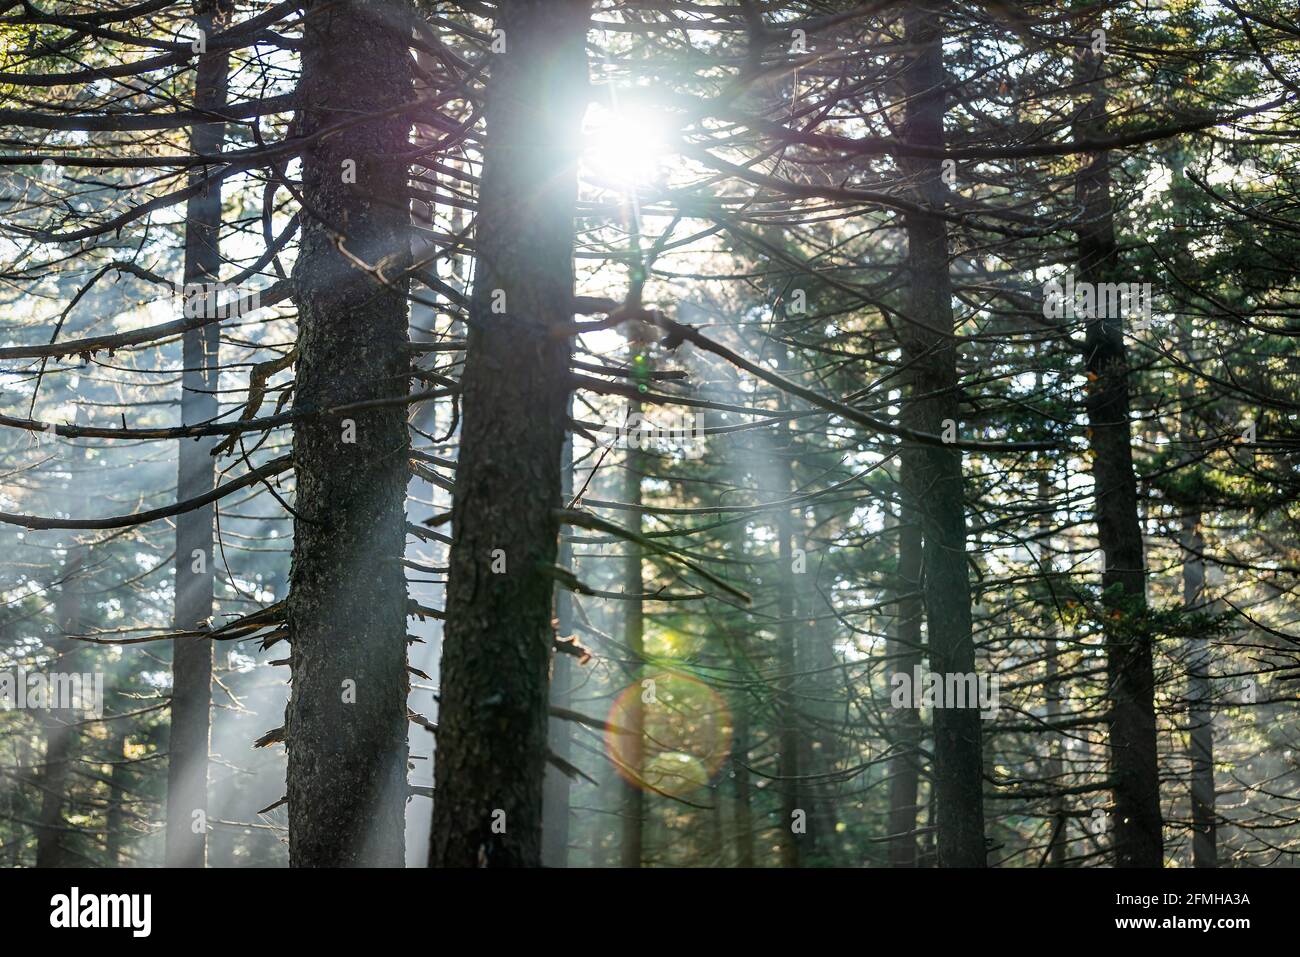 Seneca Rocks Spruce Knob avec forêt de pins Huckleberry Trail en automne avec les rayons du soleil derrière les arbres conifères dans le brouillard Brume en Virginie occidentale Banque D'Images